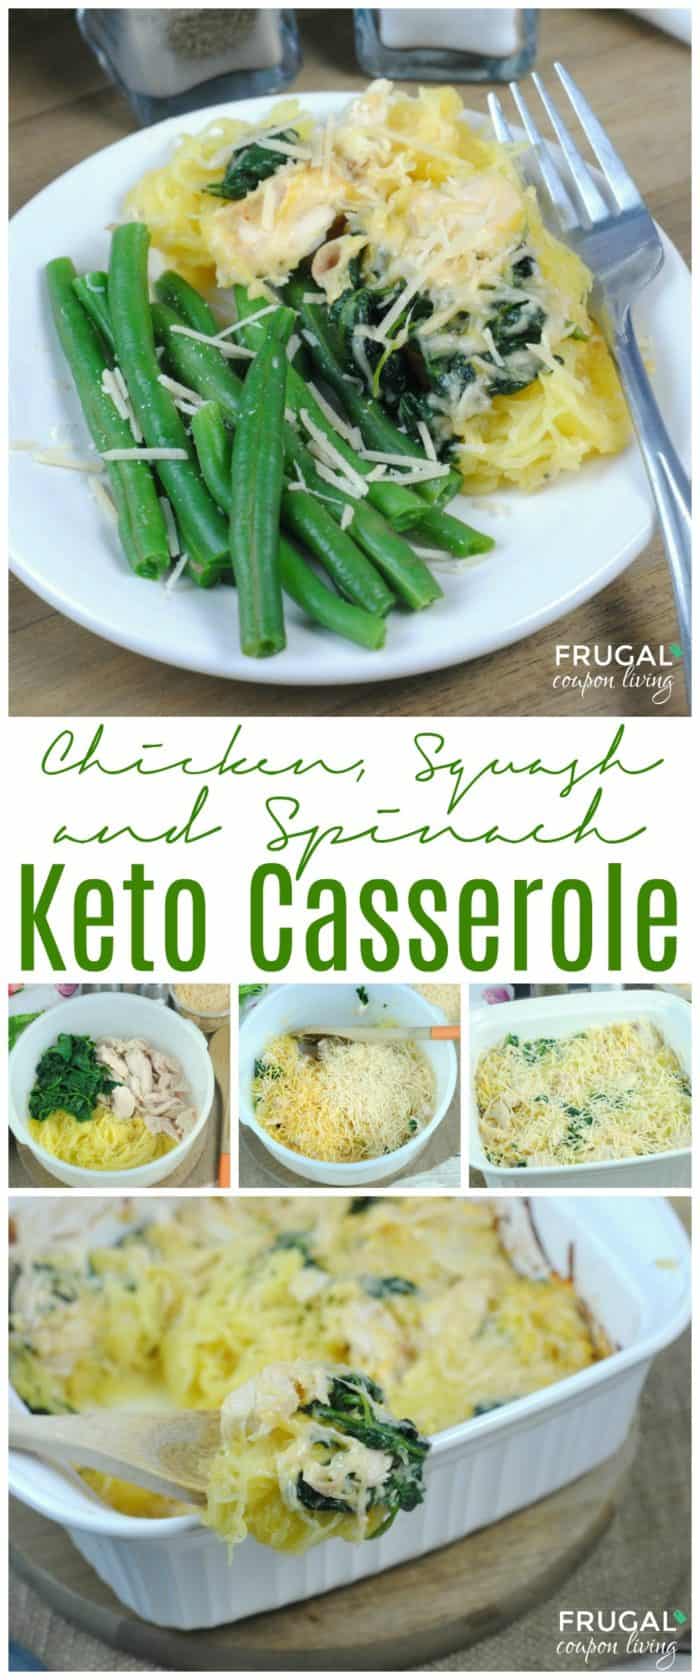 Chicken, Squash & Spinach Keto Casserole | Ketogenic Diet Dinner